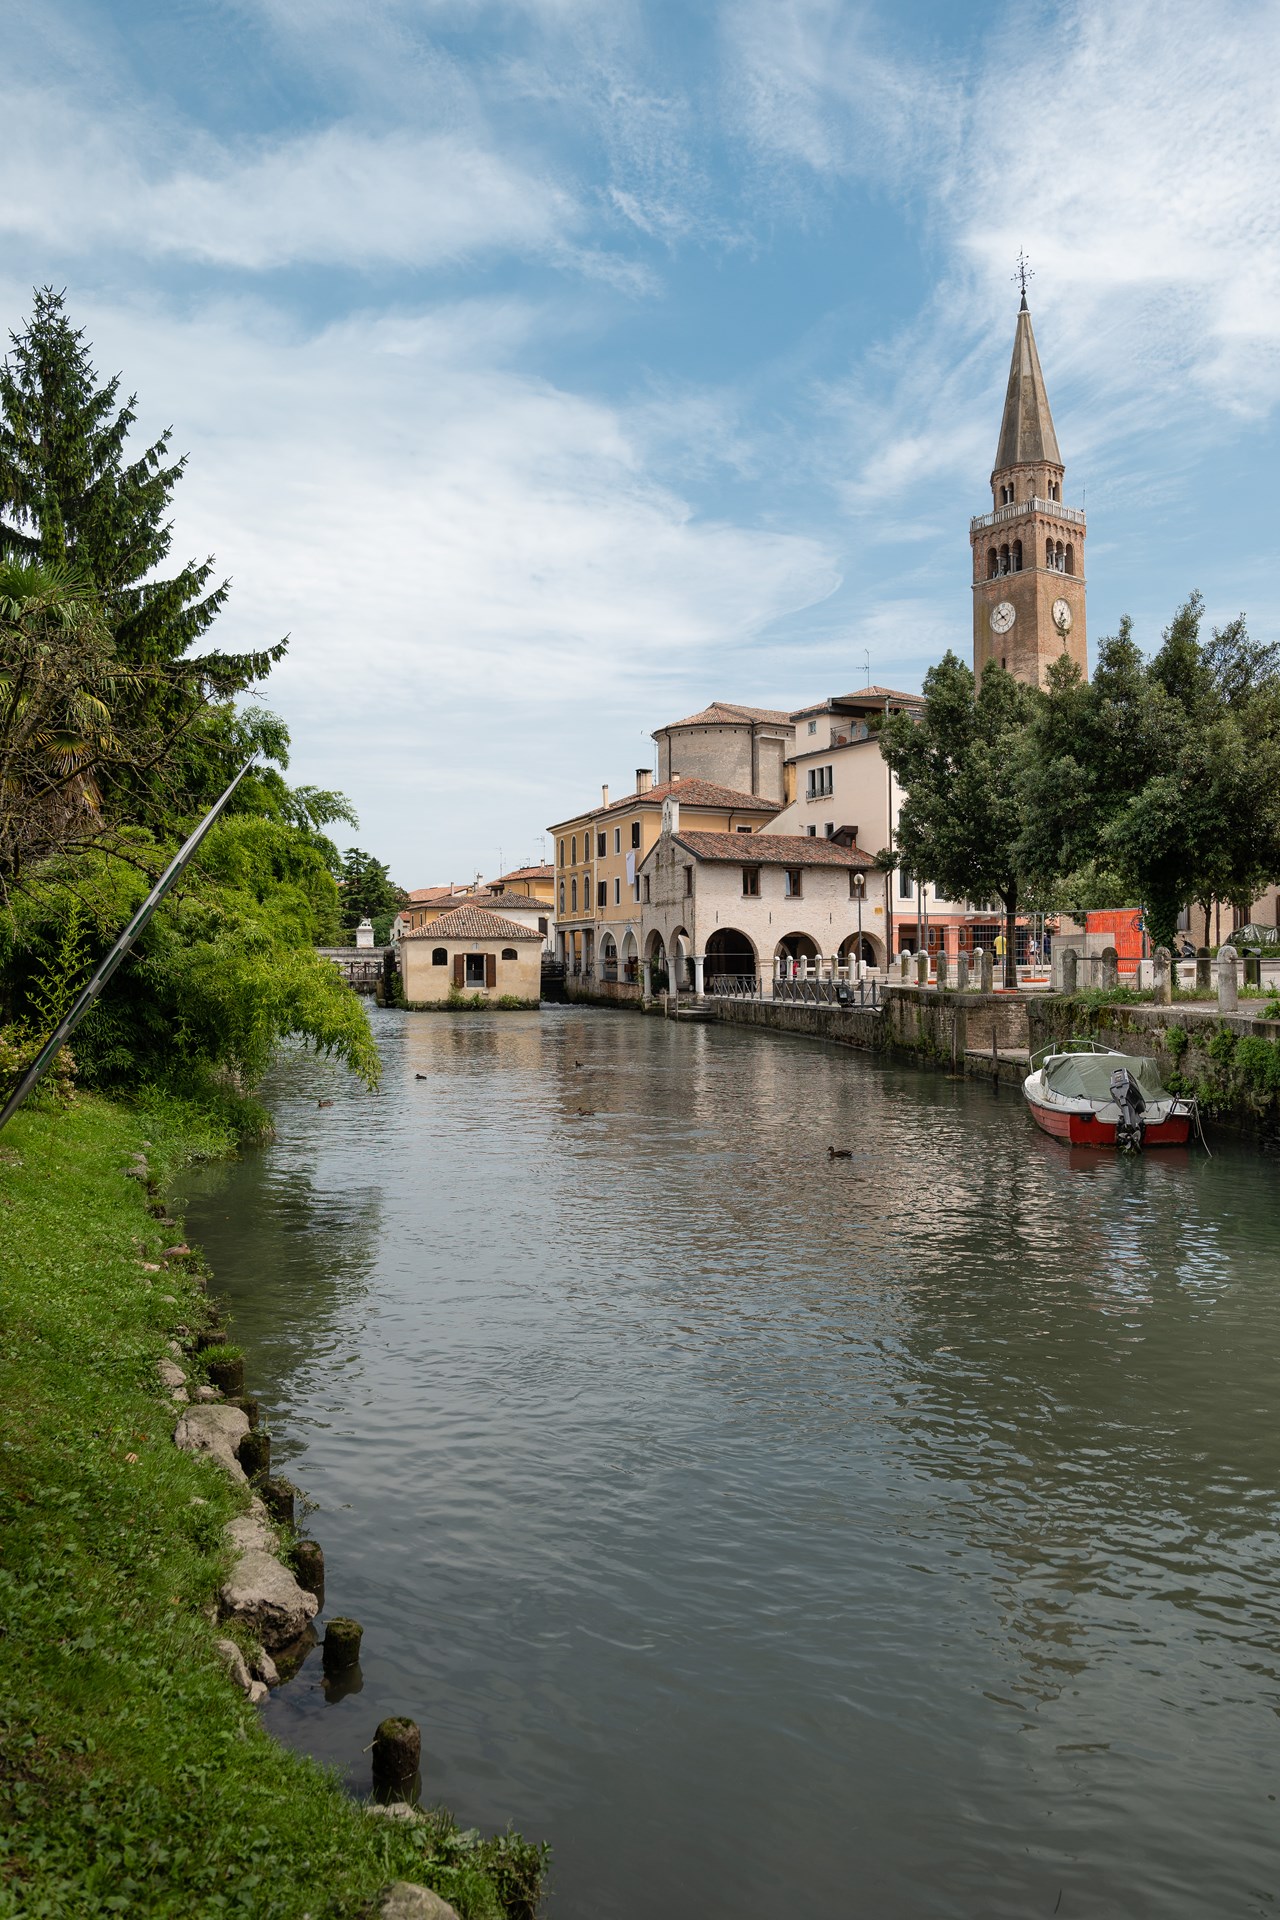 Green Village Resort Ausflugsziele Geführte Ausflüge in Venetien